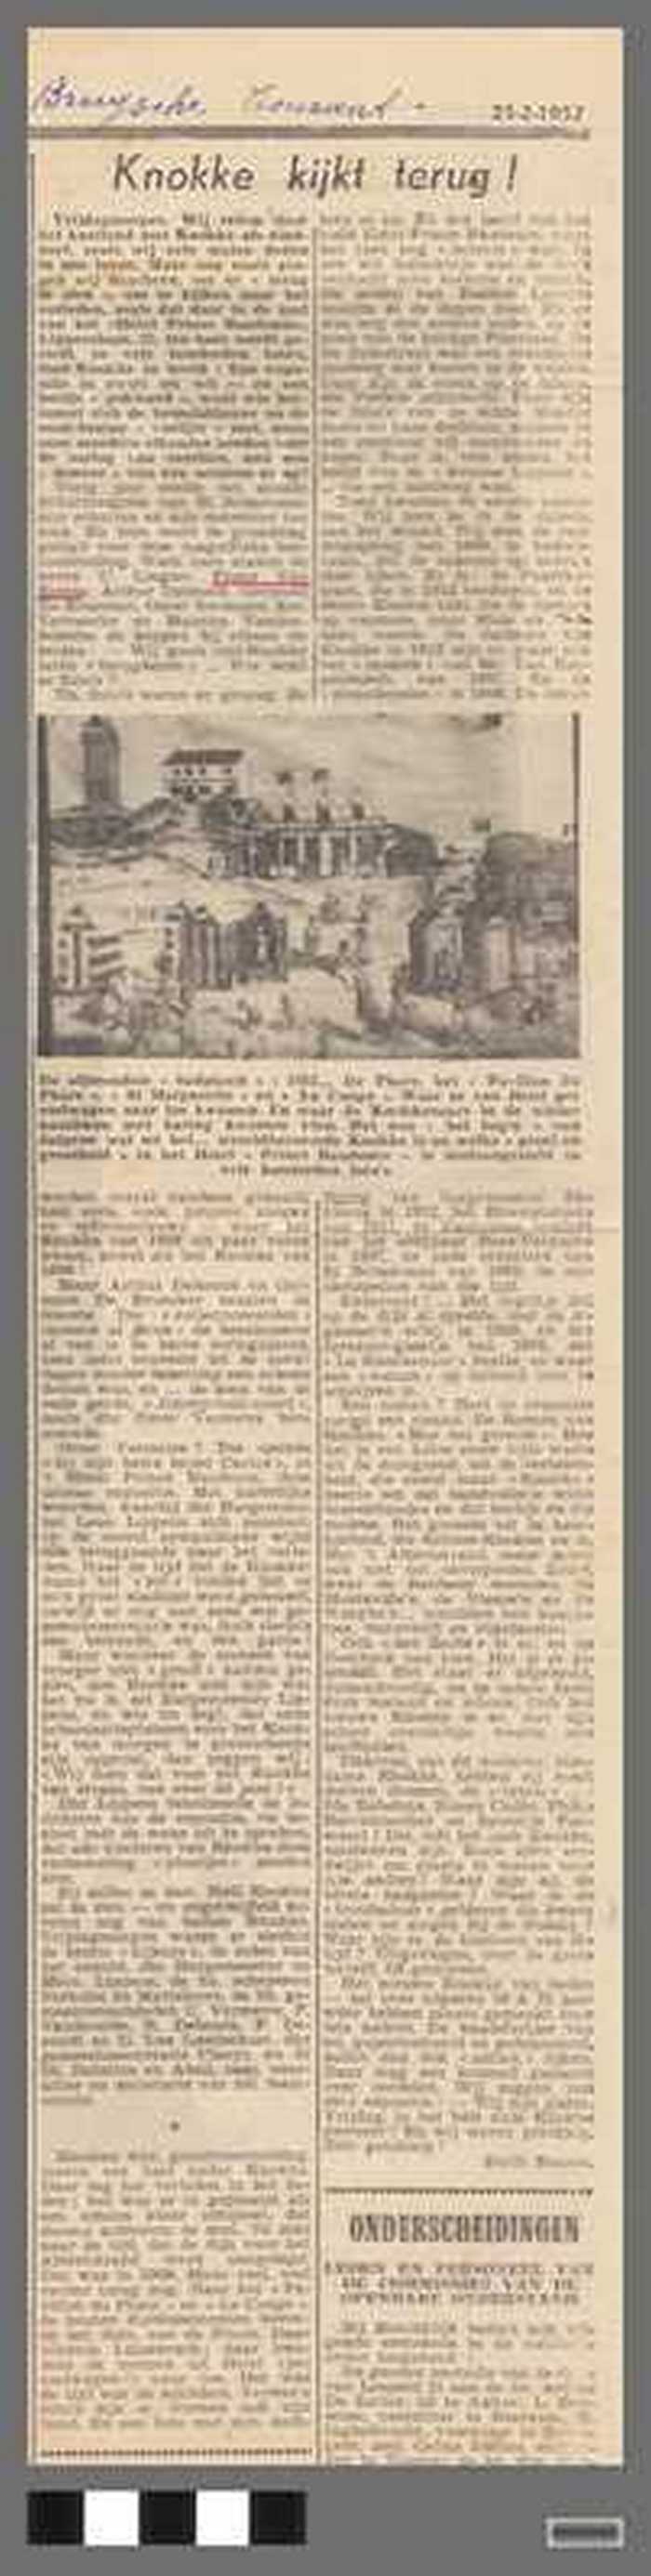 Uitgeknipt krantenartikel uit Brugsche Courant:  Knokke kijkt terug! - 23-2-1952